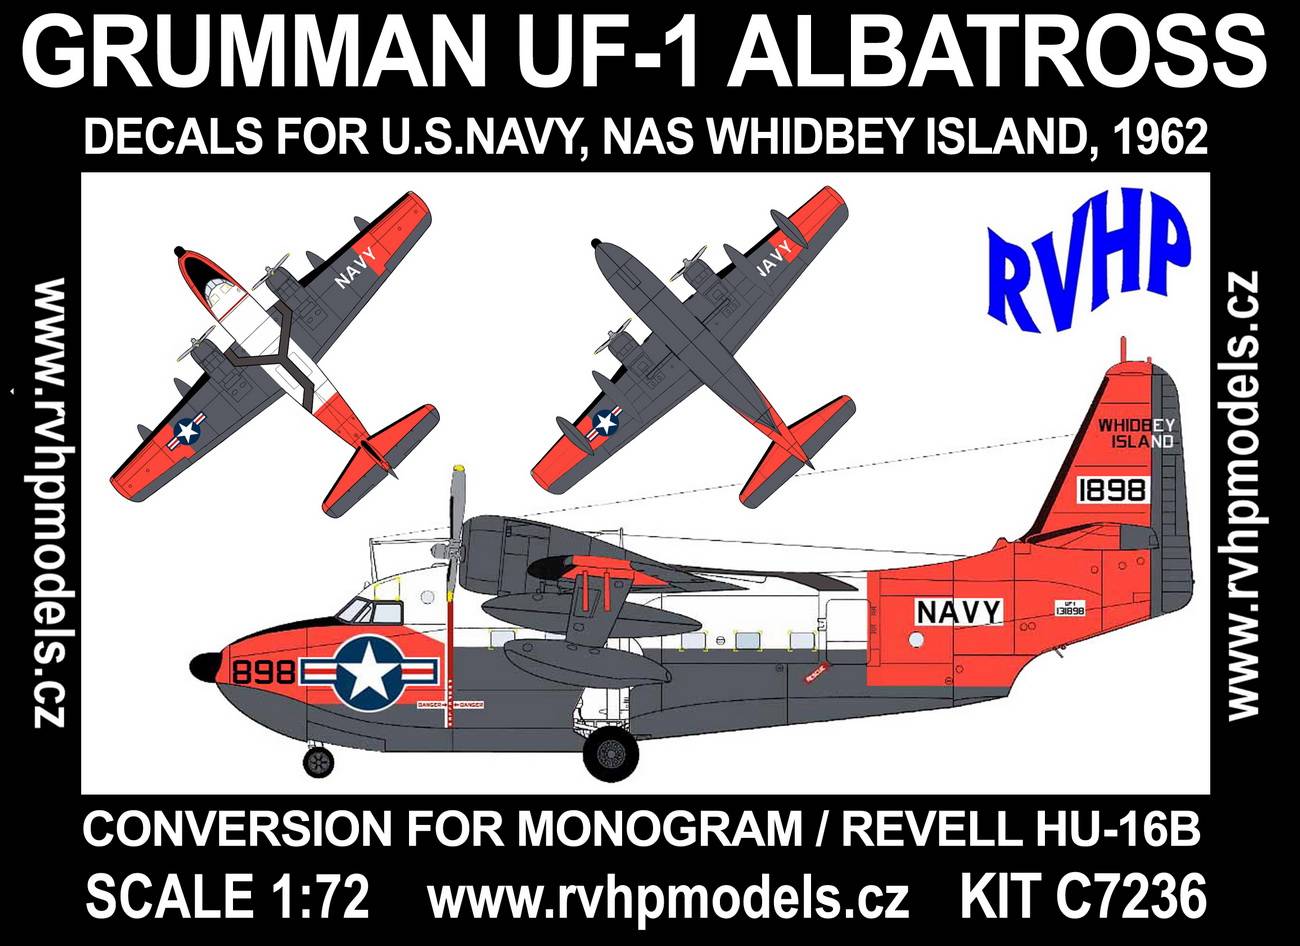 Accessoires - Grumman UF-1 Albatross (US Navy) (conçu pour être utilis